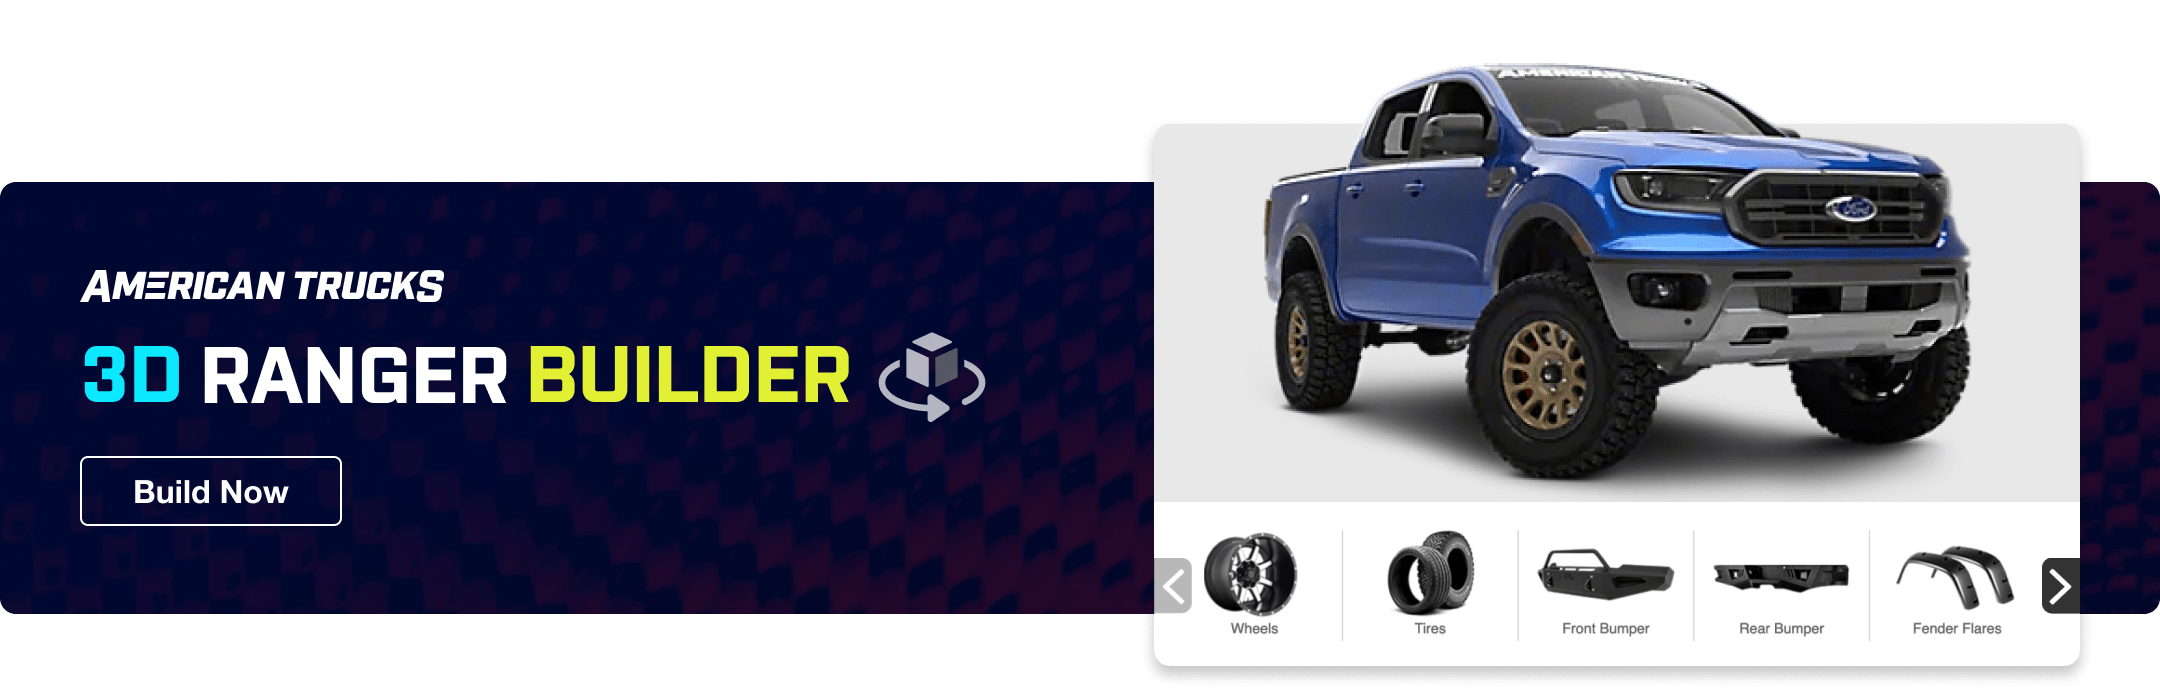 Ranger Builder